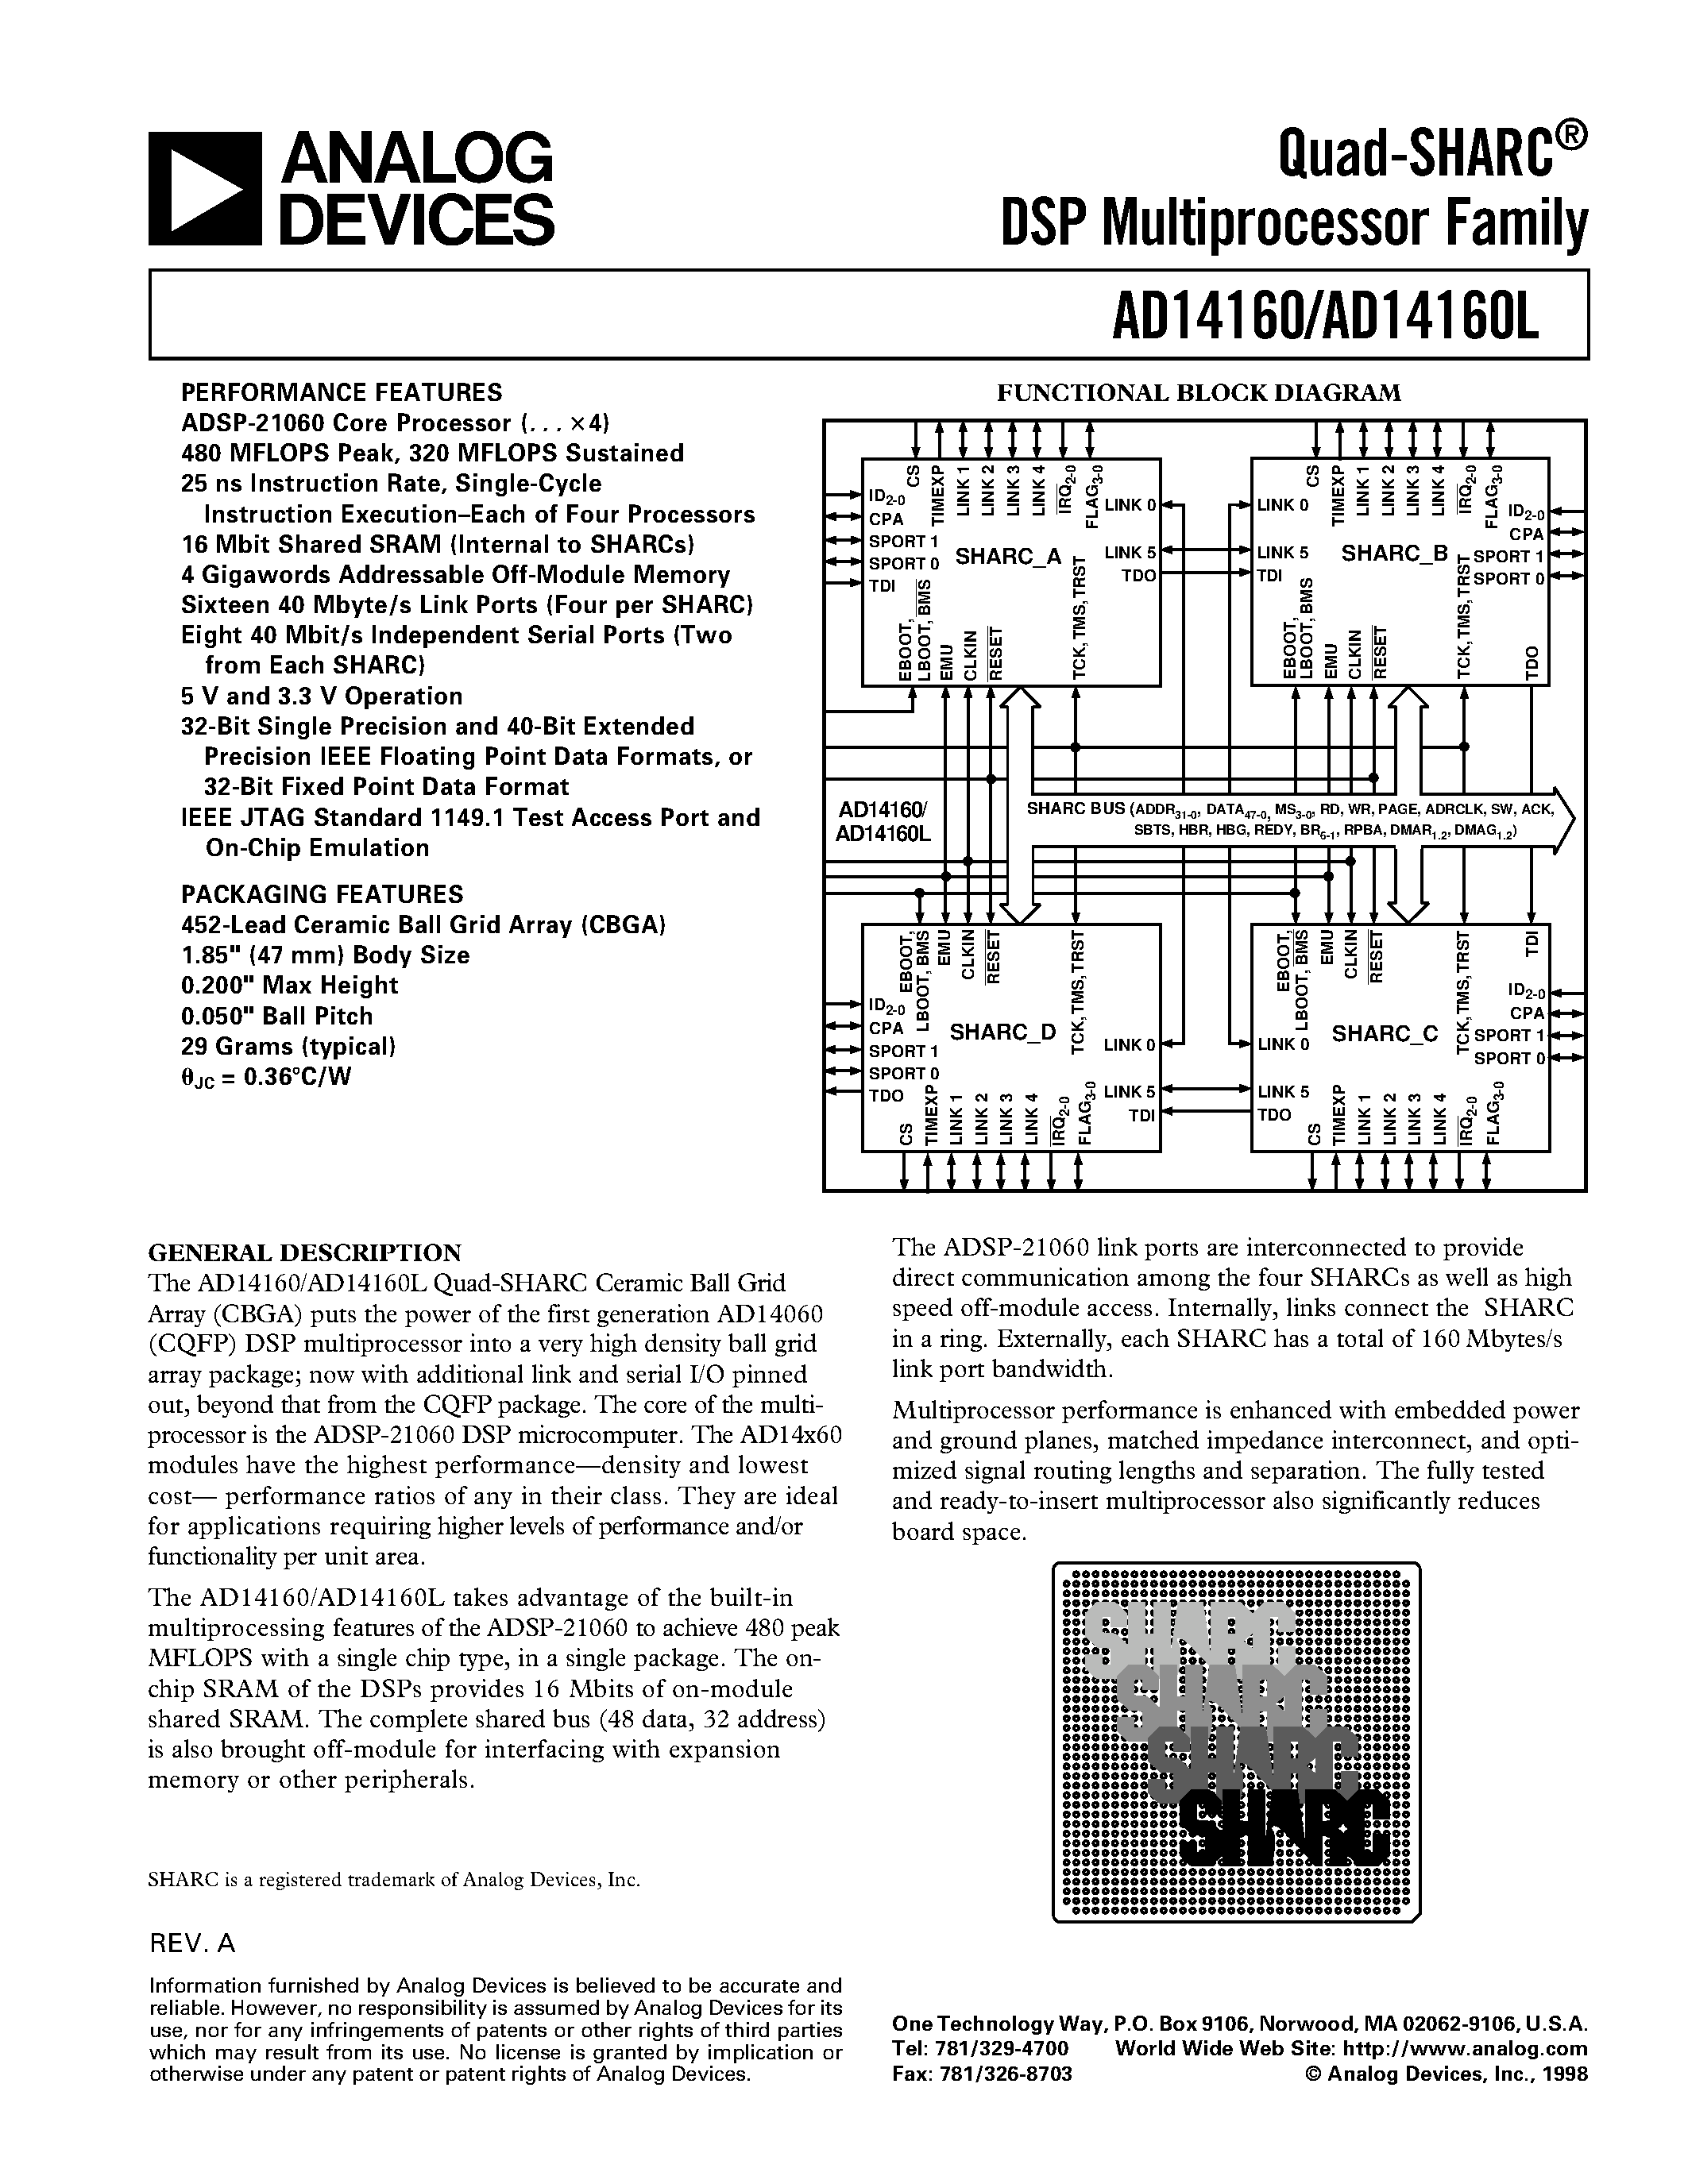 Даташит AD14160BB-4 - Quad-SHARC DSP Multiprocessor Family страница 1